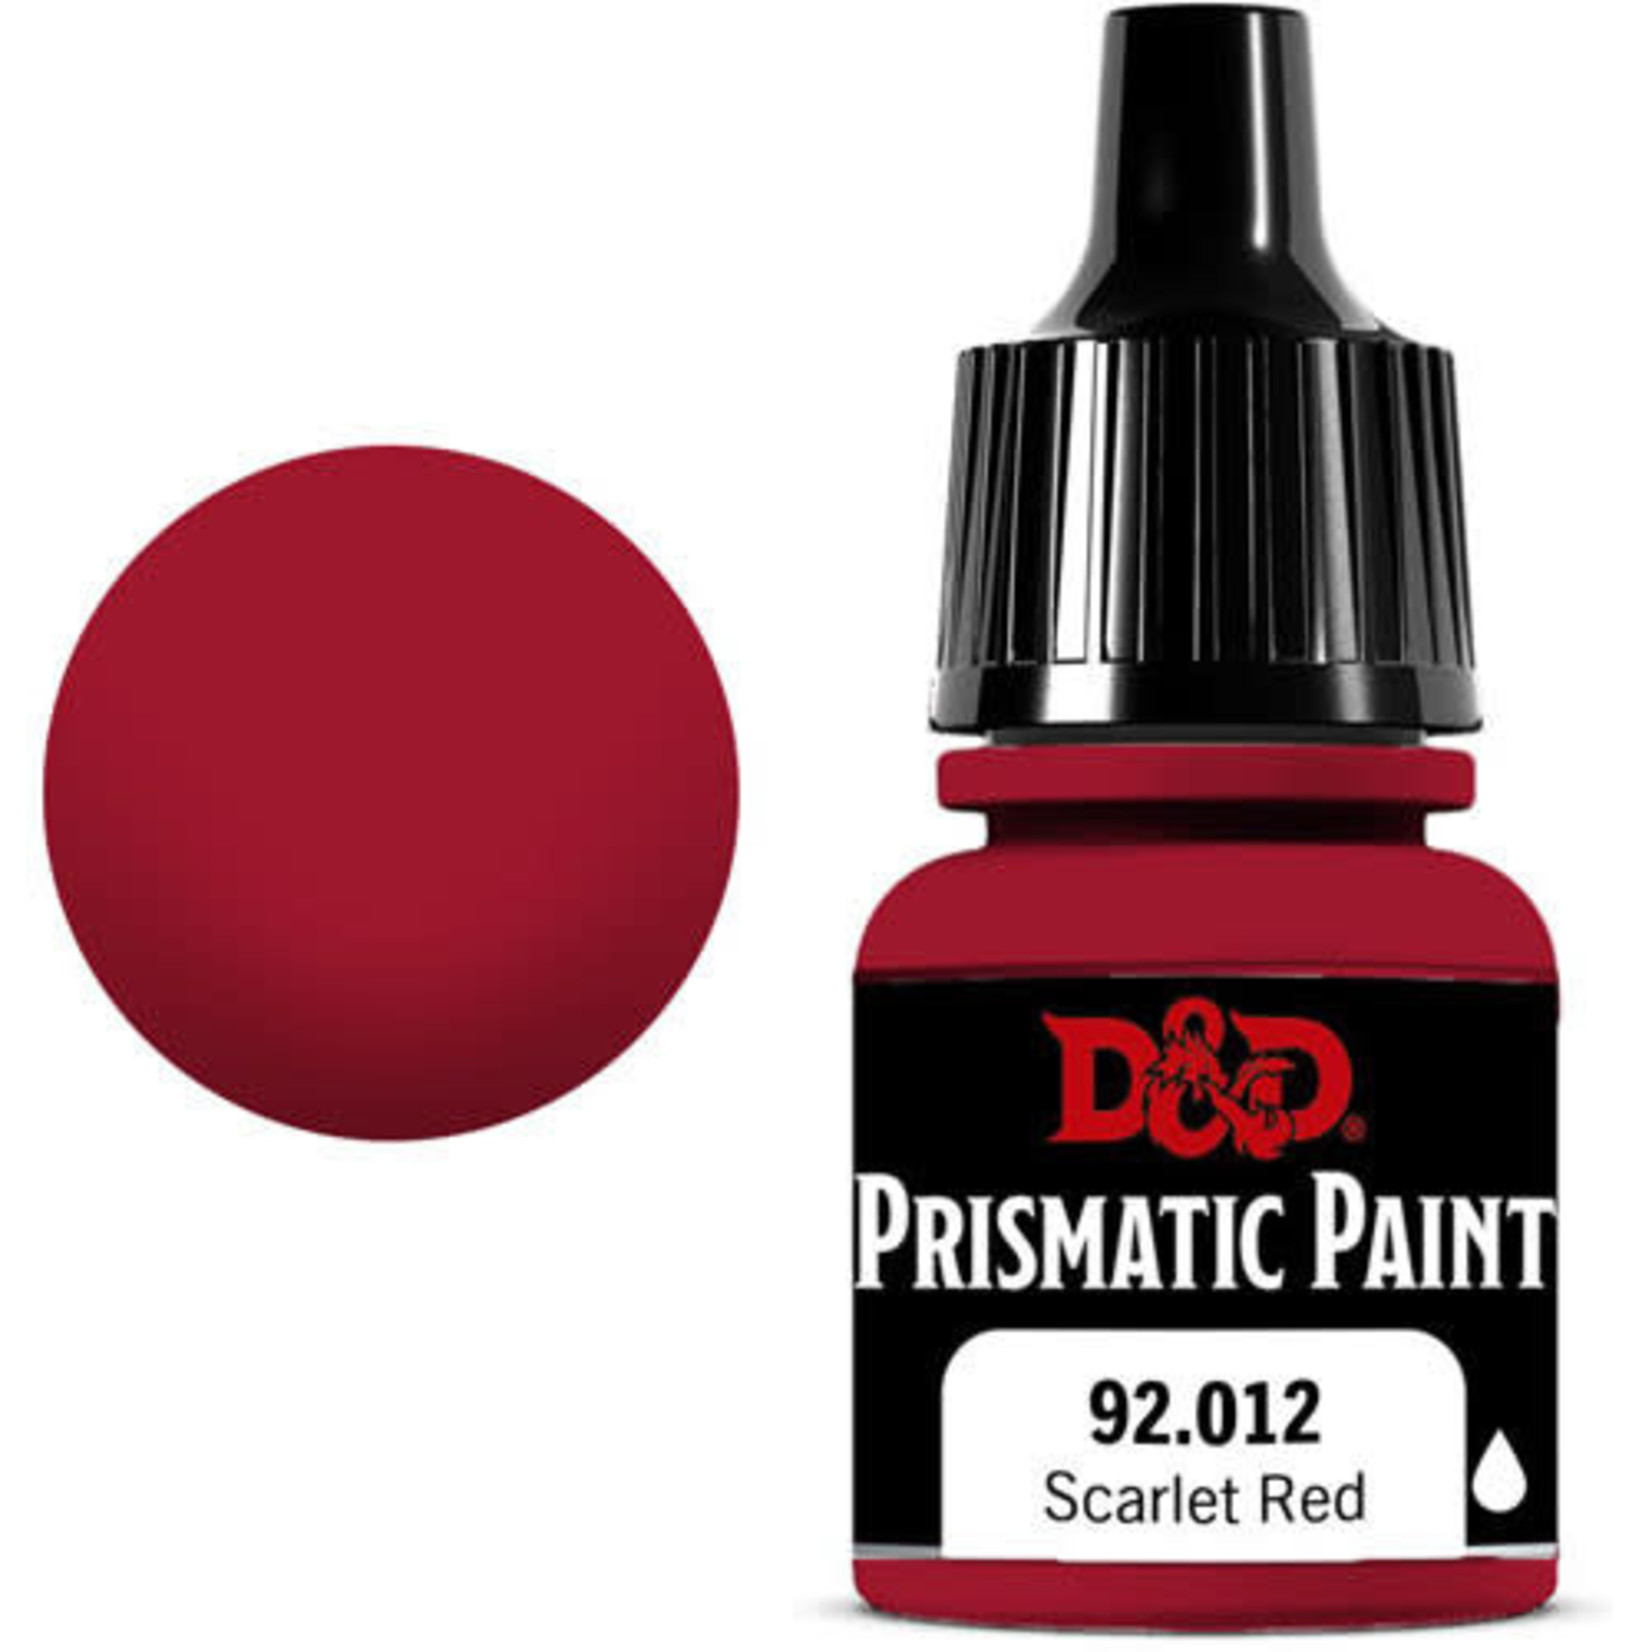 WIZKIDS/NECA D&D Prismatic Paint: Scarlet Red 92.012